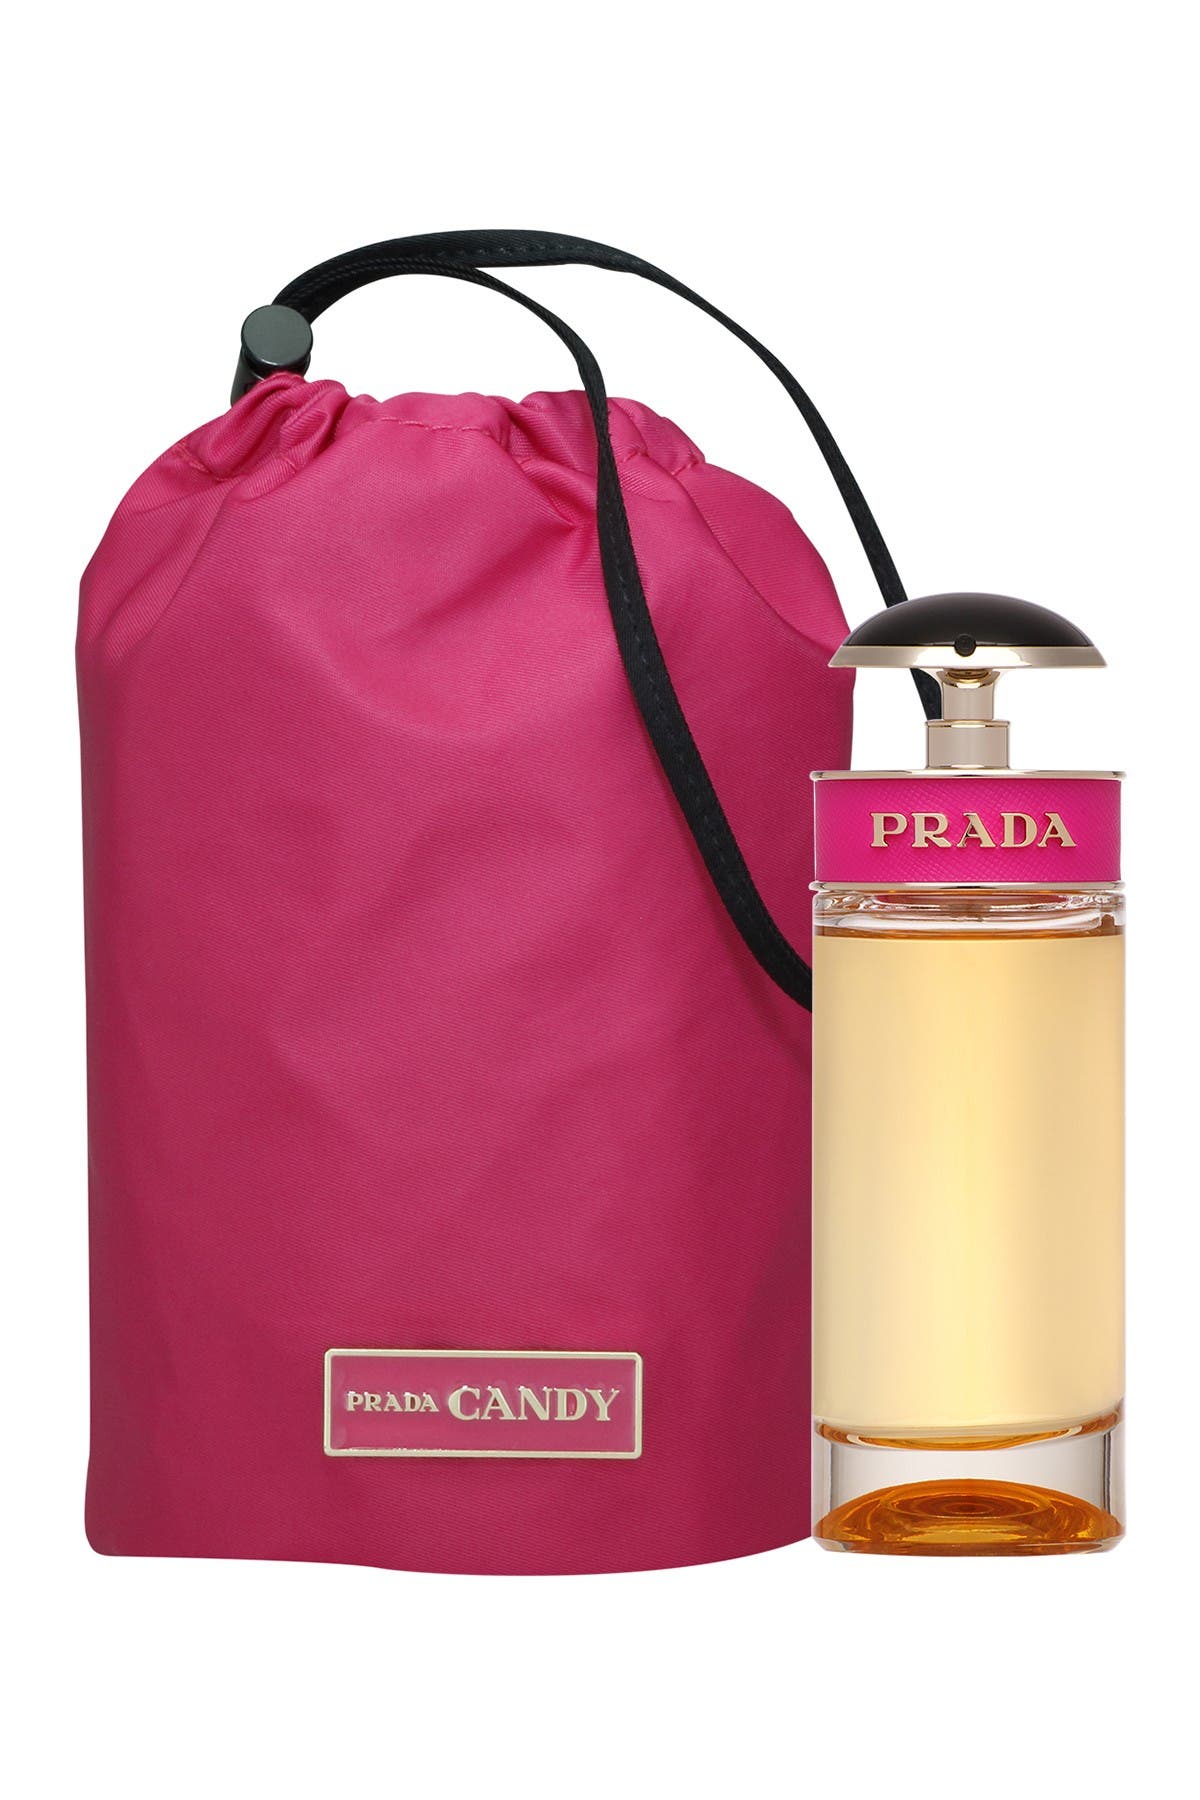 Prada | Candy Eau de Parfum Limited 